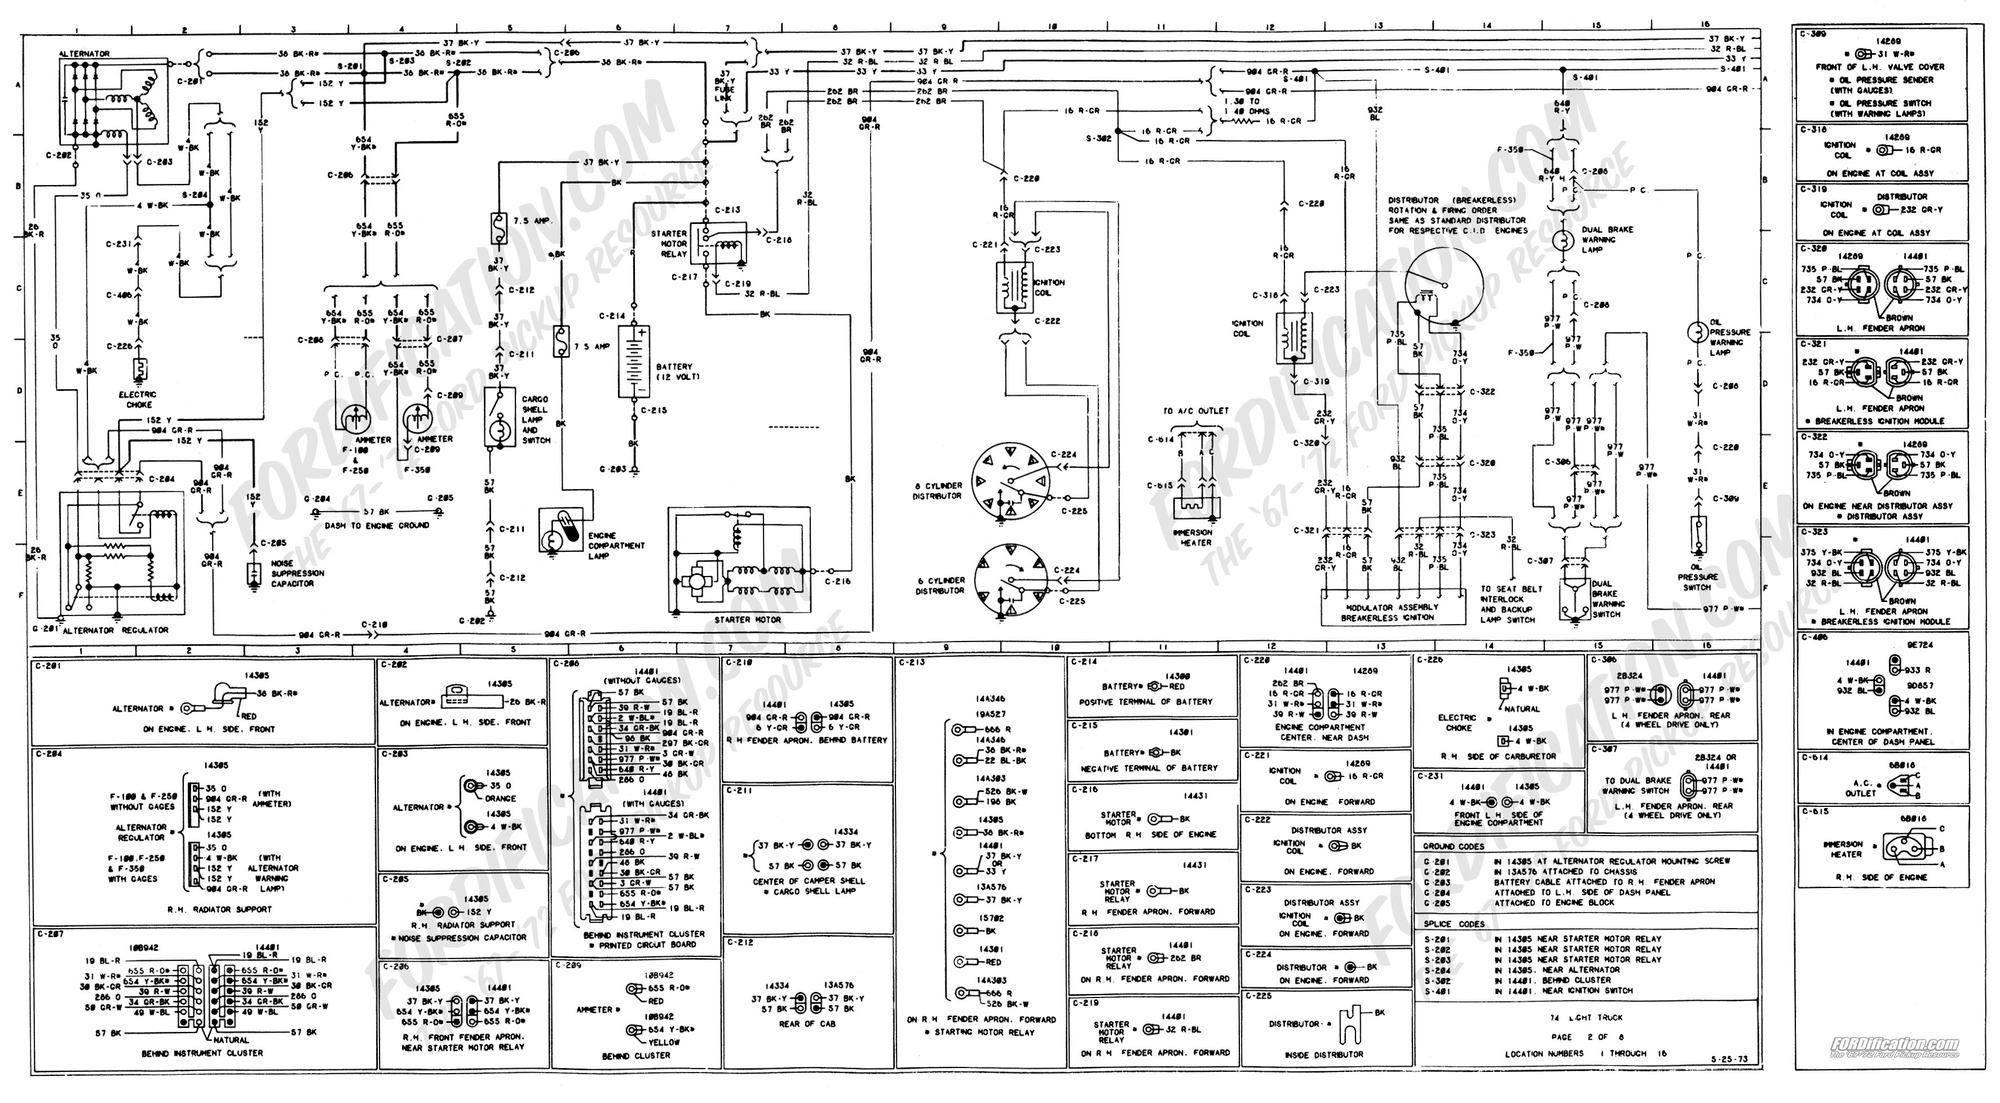 Voltage Regulator Wiring 1978 Ford Fairmont | schematic and wiring diagram